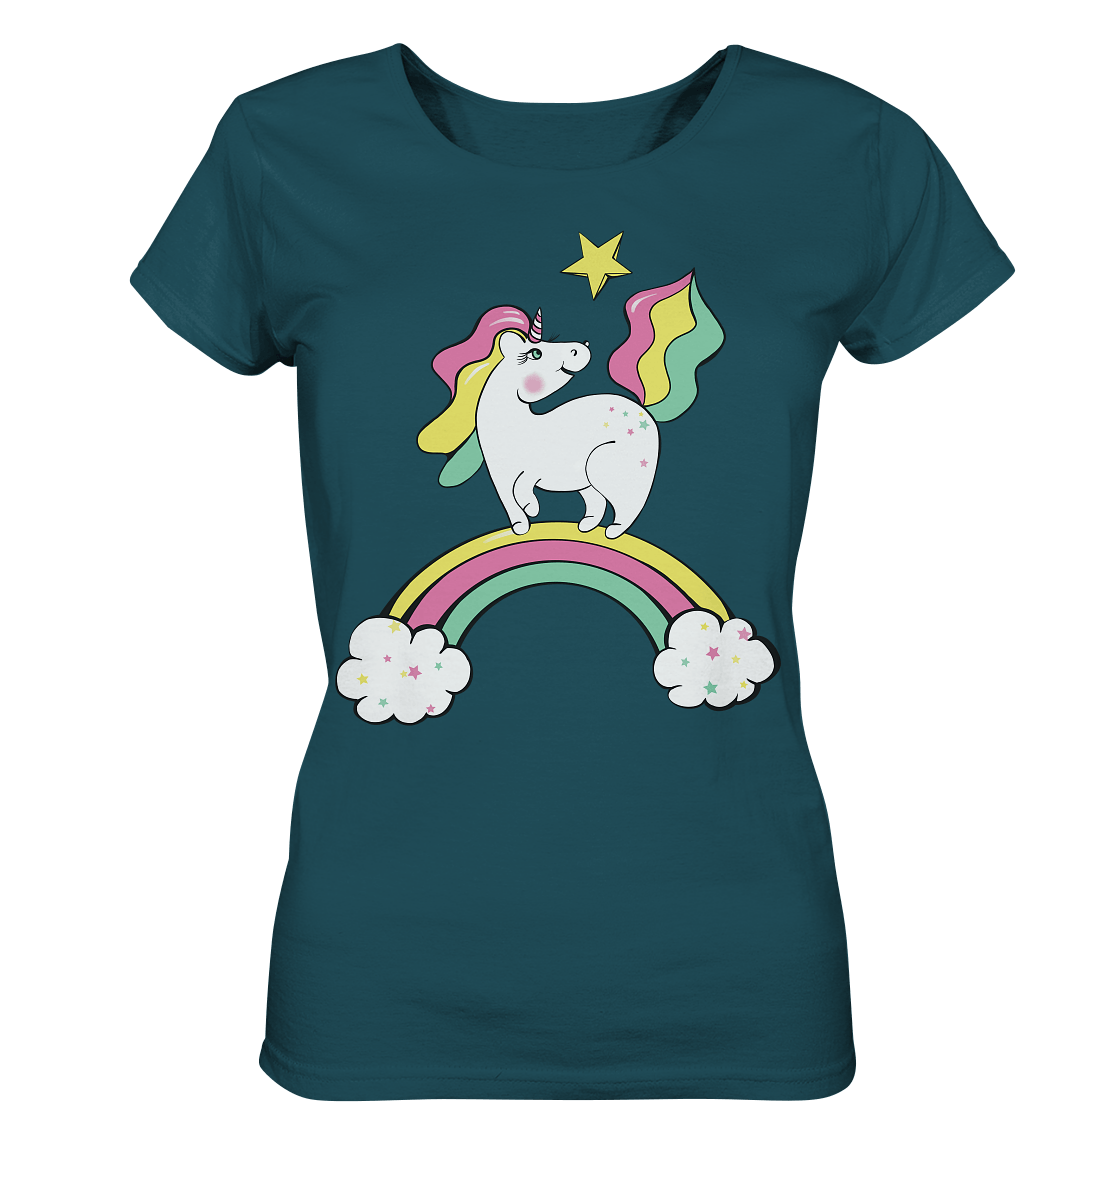 Einhorn T-Shirt Unicorn in stargazer Einhorn Zeichnung Unicorn Muster mit Sternen und Regenbogen von Bloominic einhorn t shirt